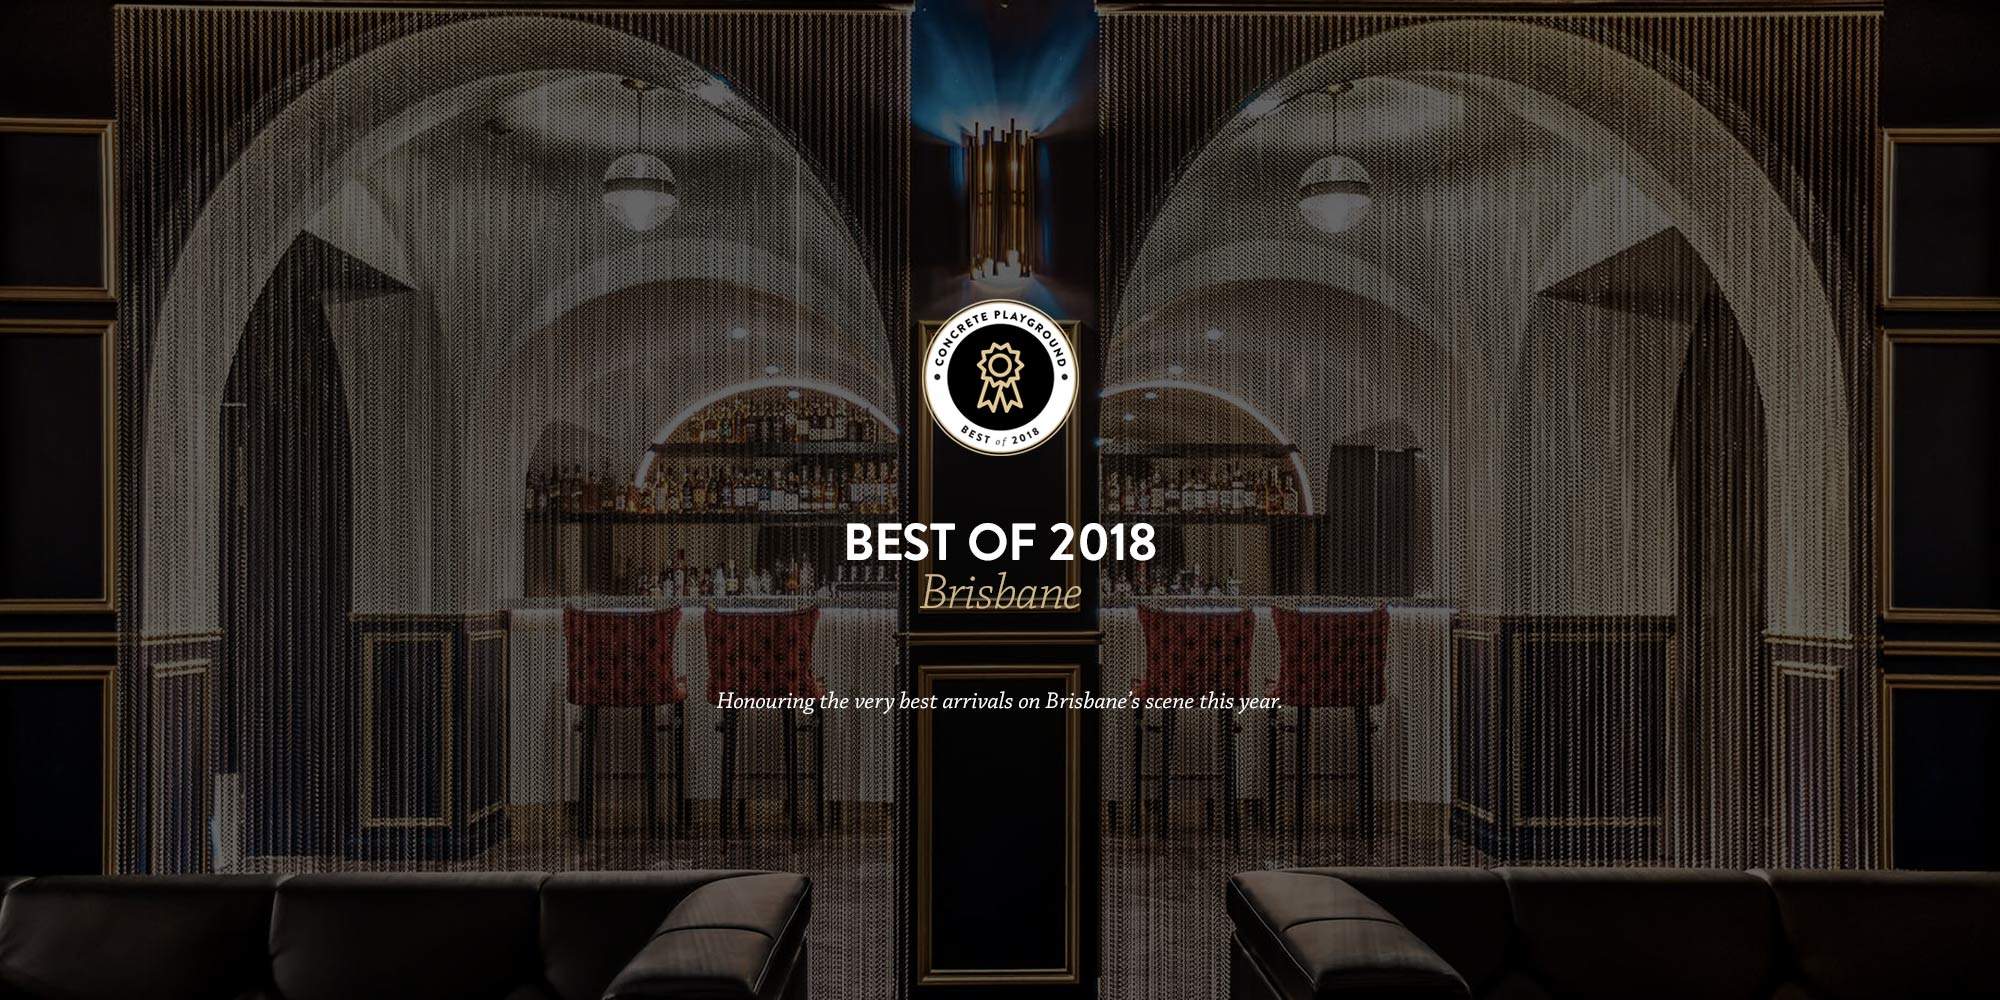 Best of 2018 Brisbane